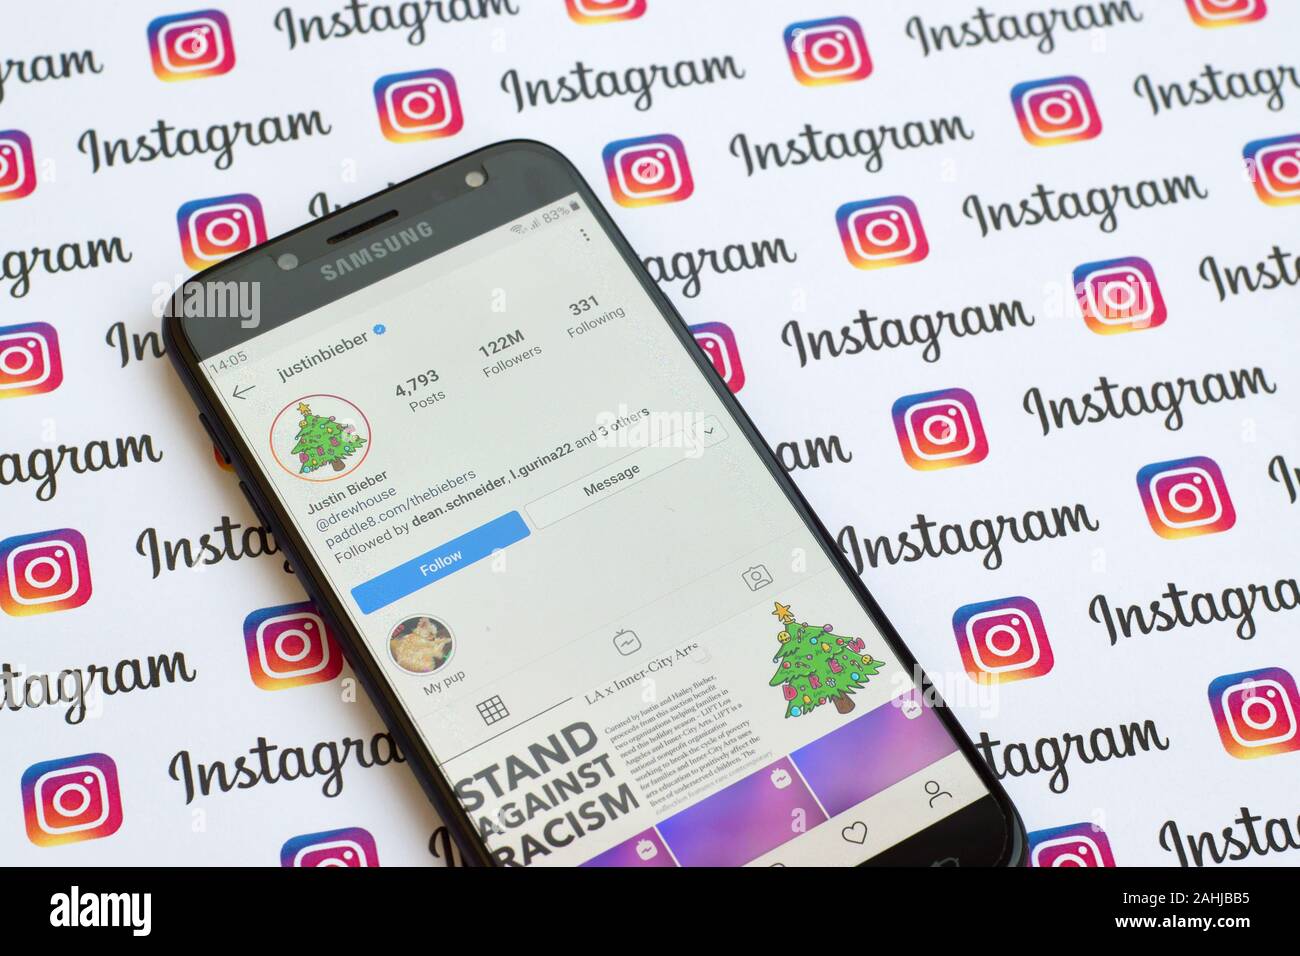 NY, USA - 4 décembre 2019 : Justin Bieber compte instagram officiel sur l'écran du smartphone sur le papier bannière instagram. Banque D'Images